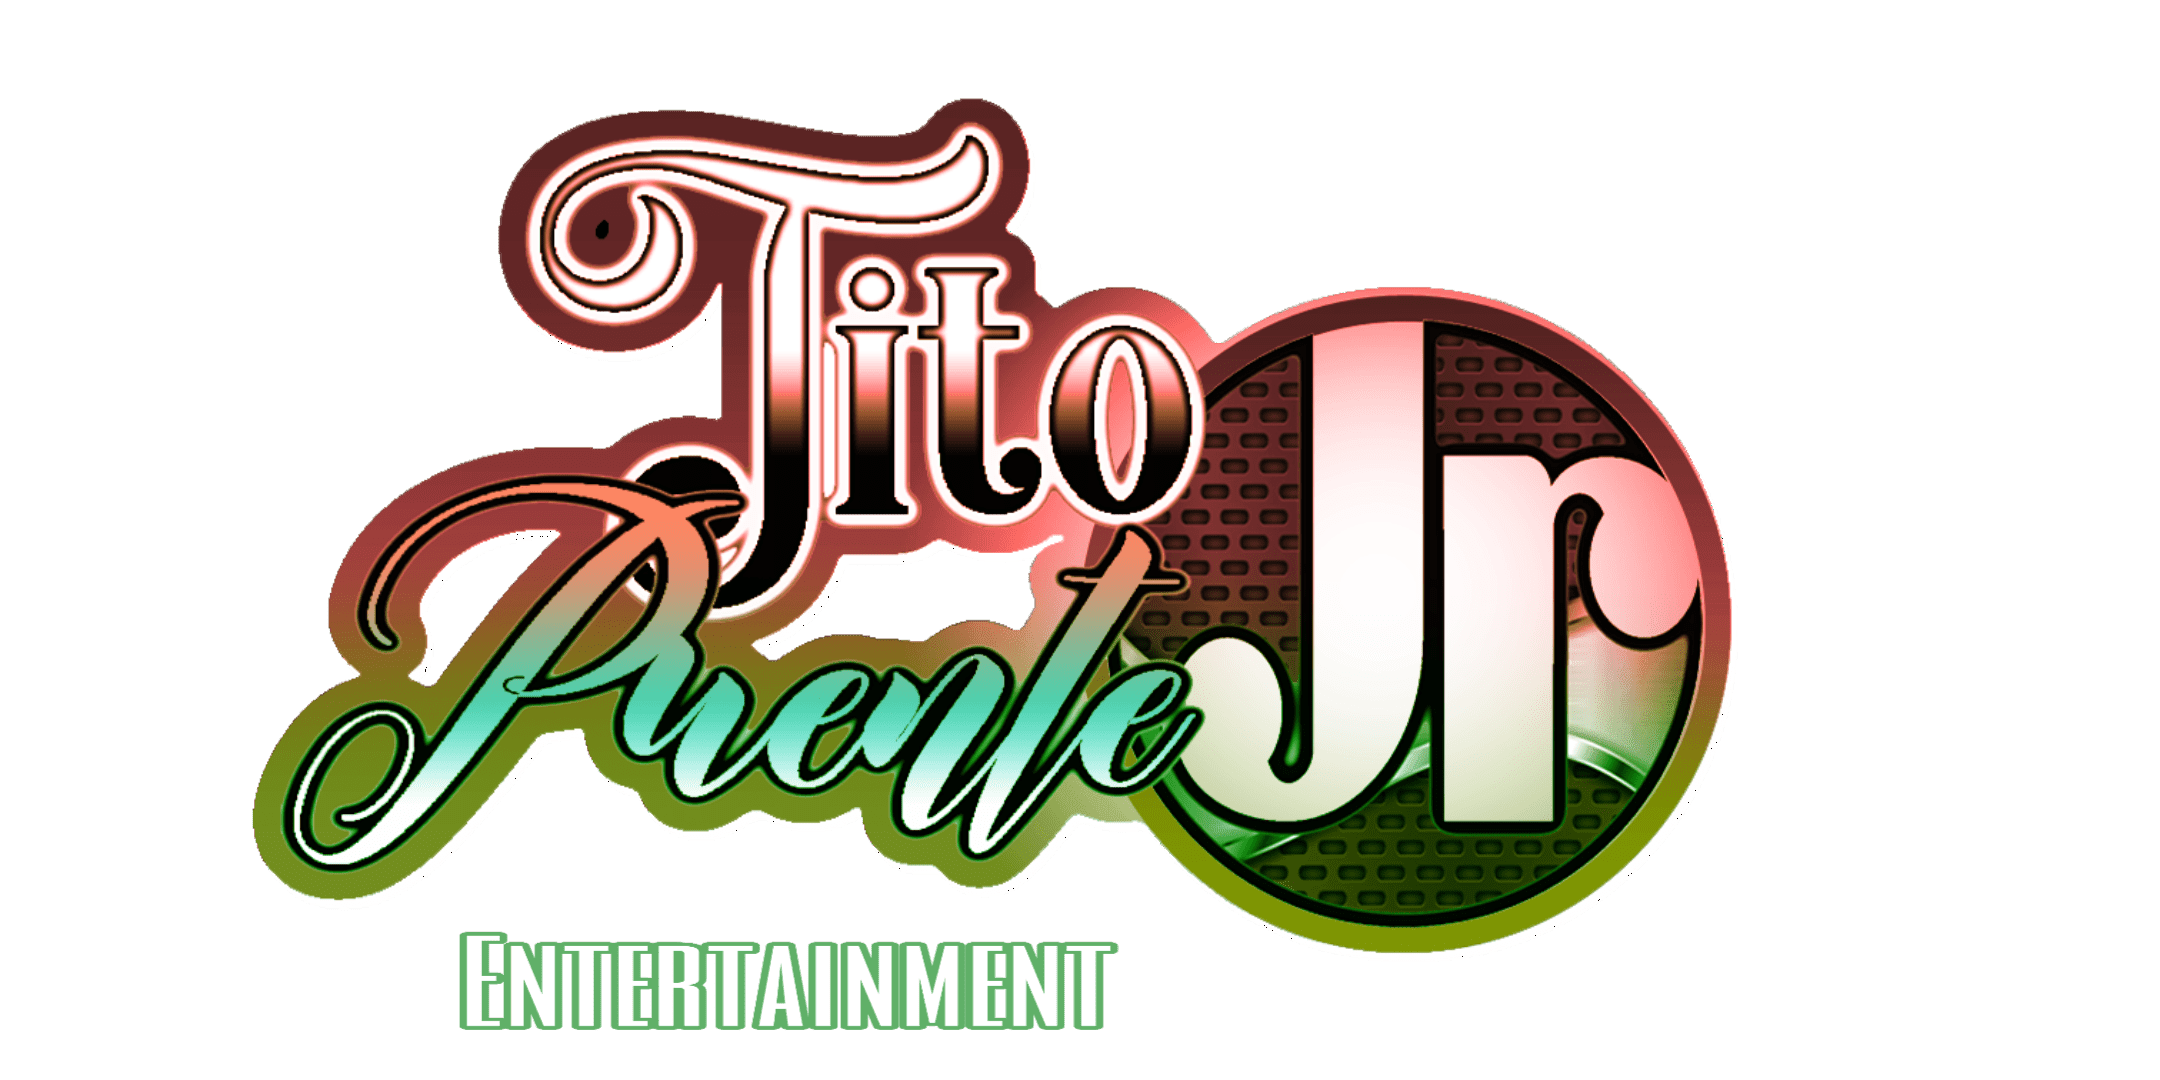 Tito Puente Jr. Entertainment